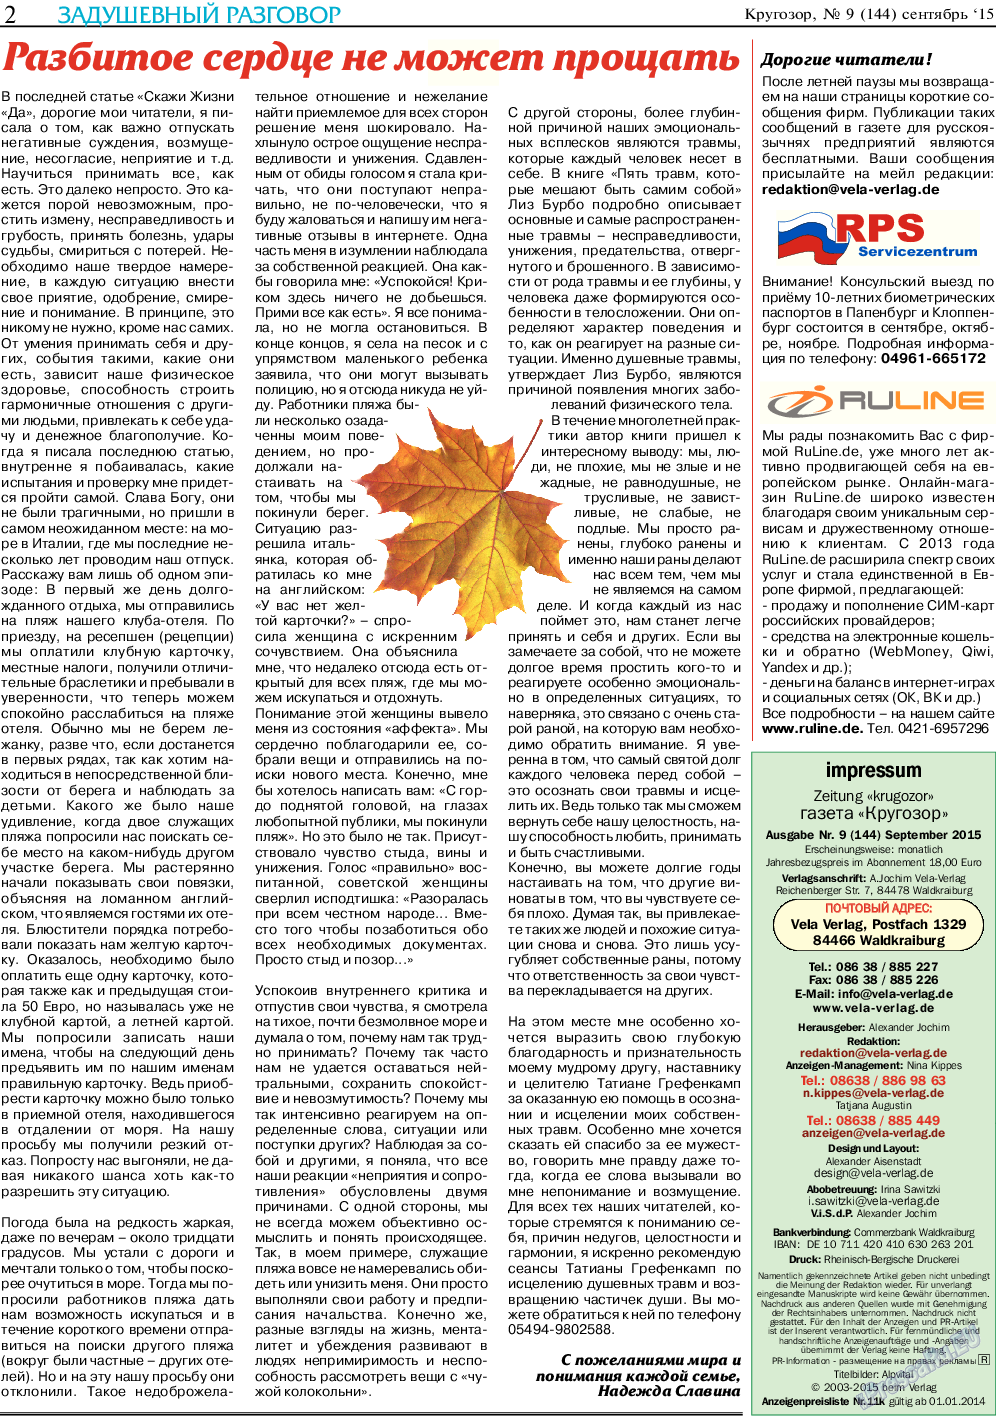 Кругозор (газета). 2015 год, номер 9, стр. 2